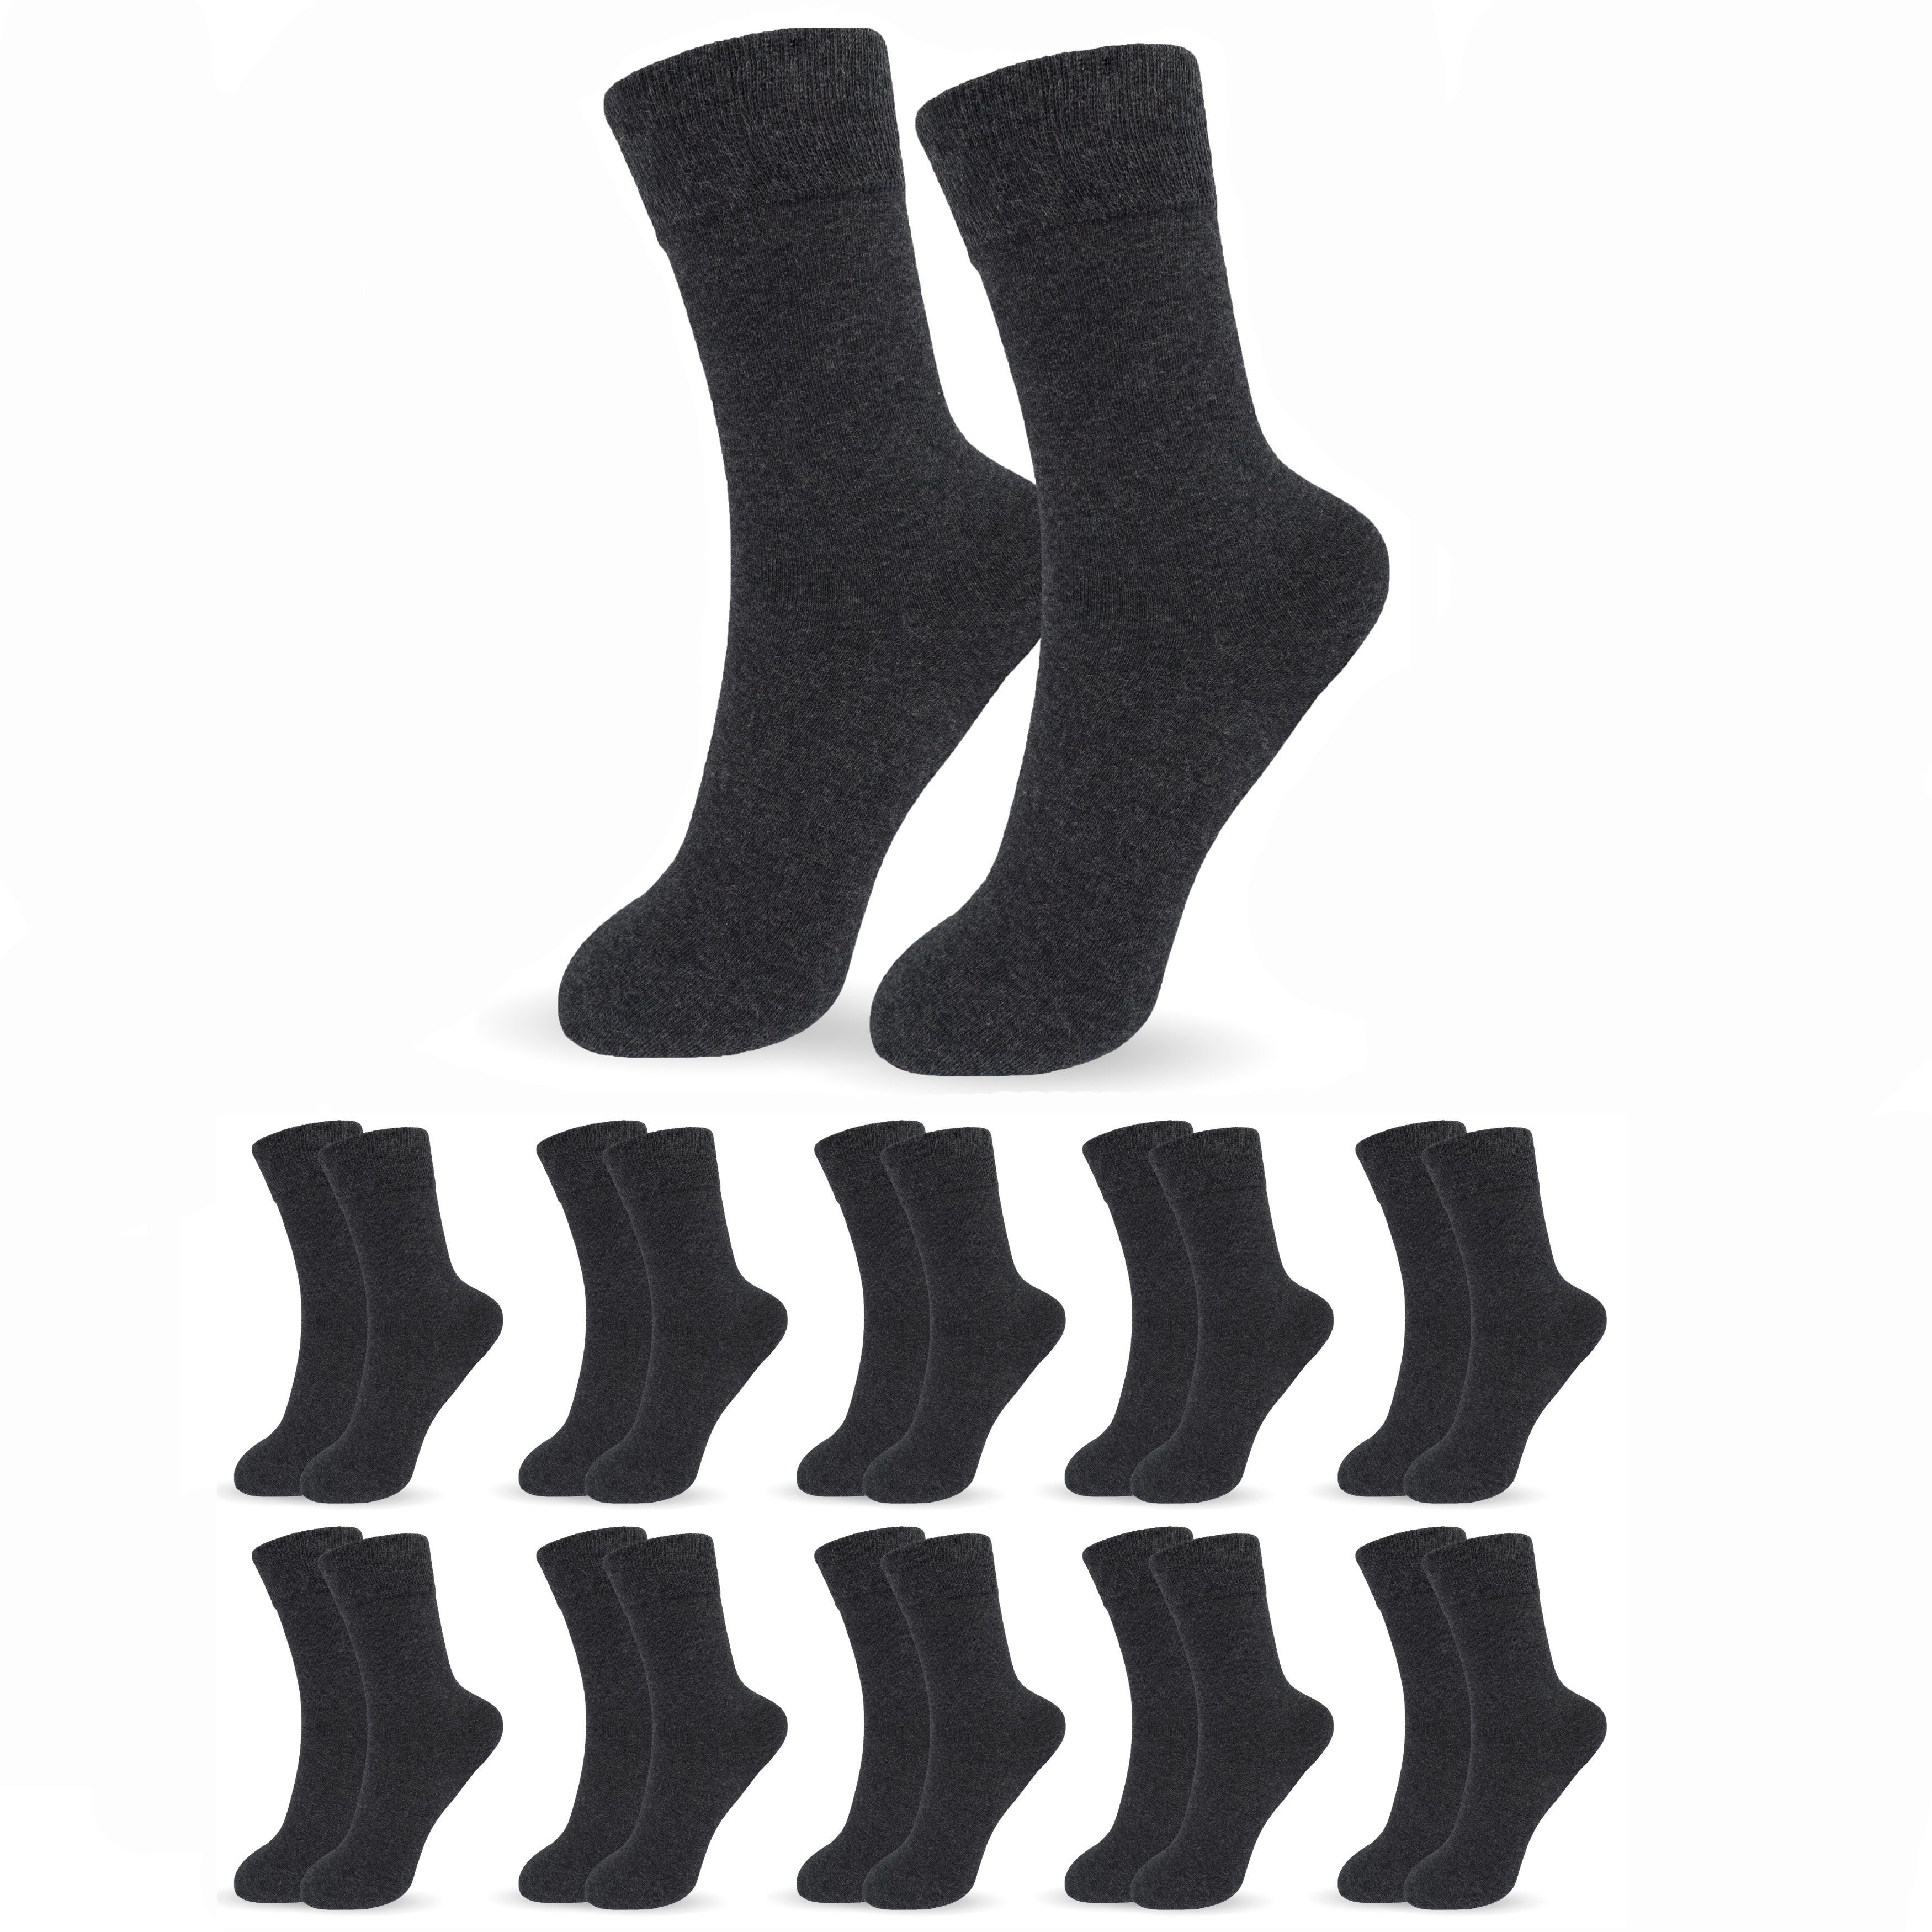 SO.I Businesssocken Herrensocken Lange Freizeit-Socken für Herren aus Baumwolle (Größen: 39-46, 5-15er Pack) Atmungsaktiver Stoff 10xAnthrazitgrau